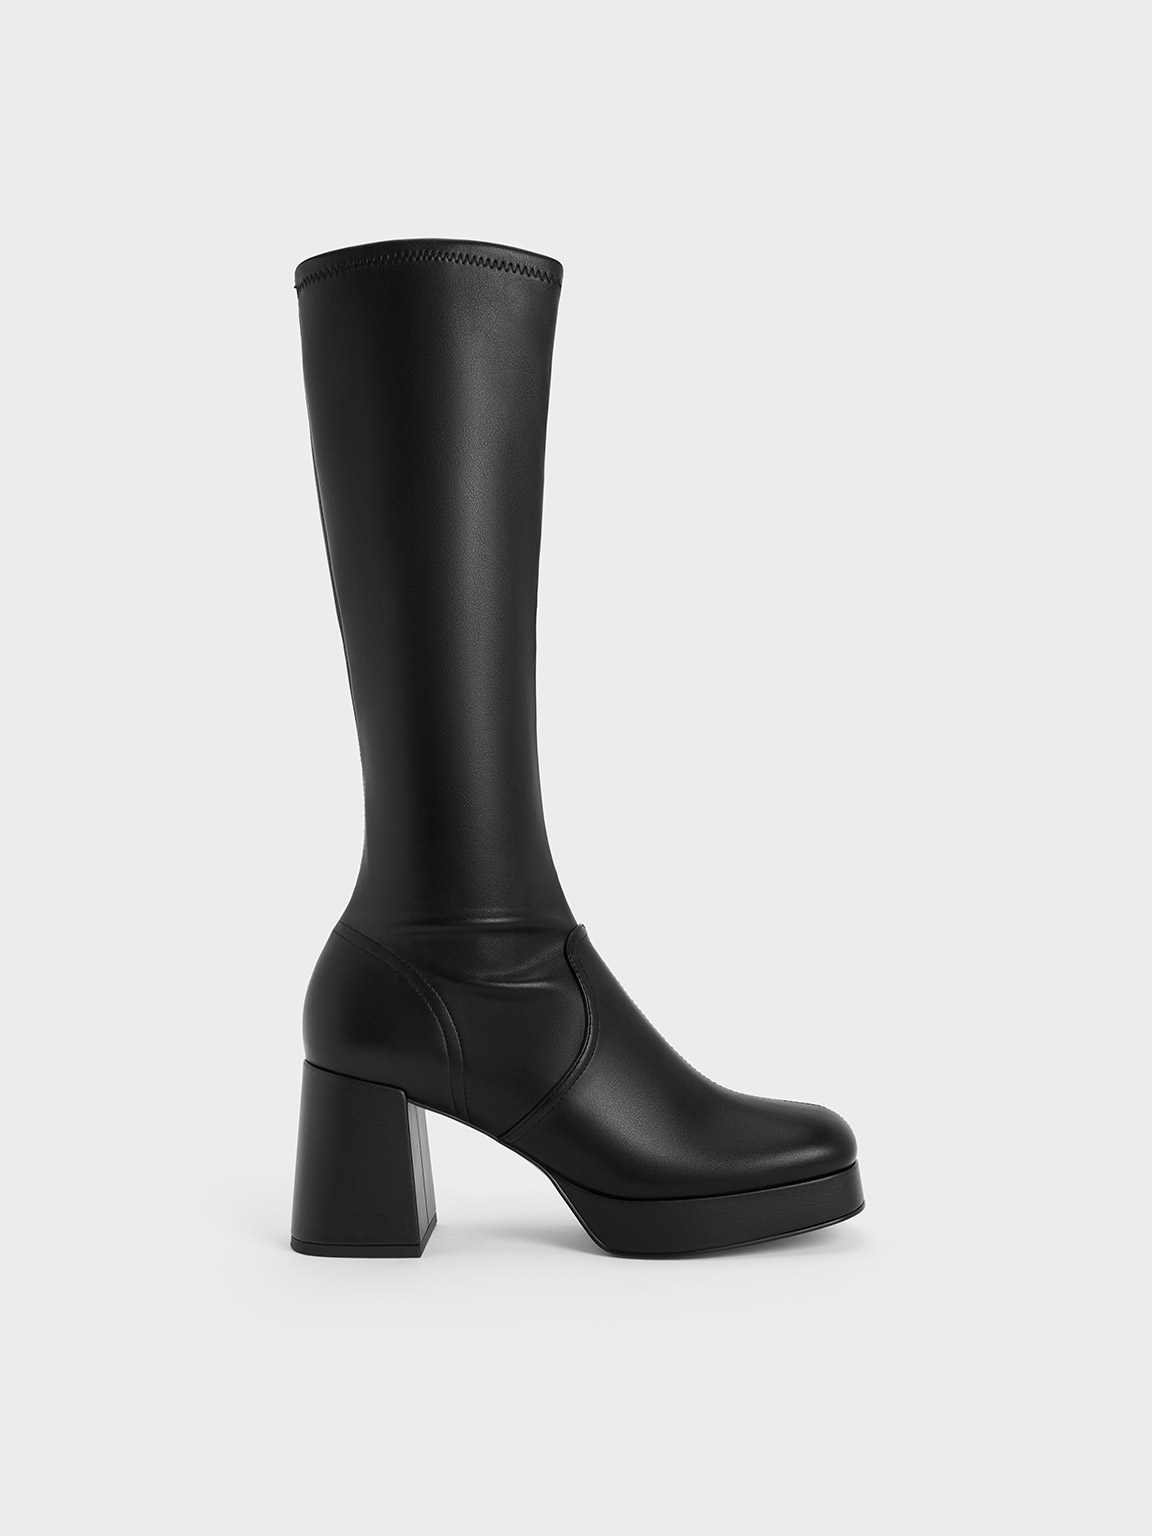 Evie Platform Block-Heel Knee-High Boots